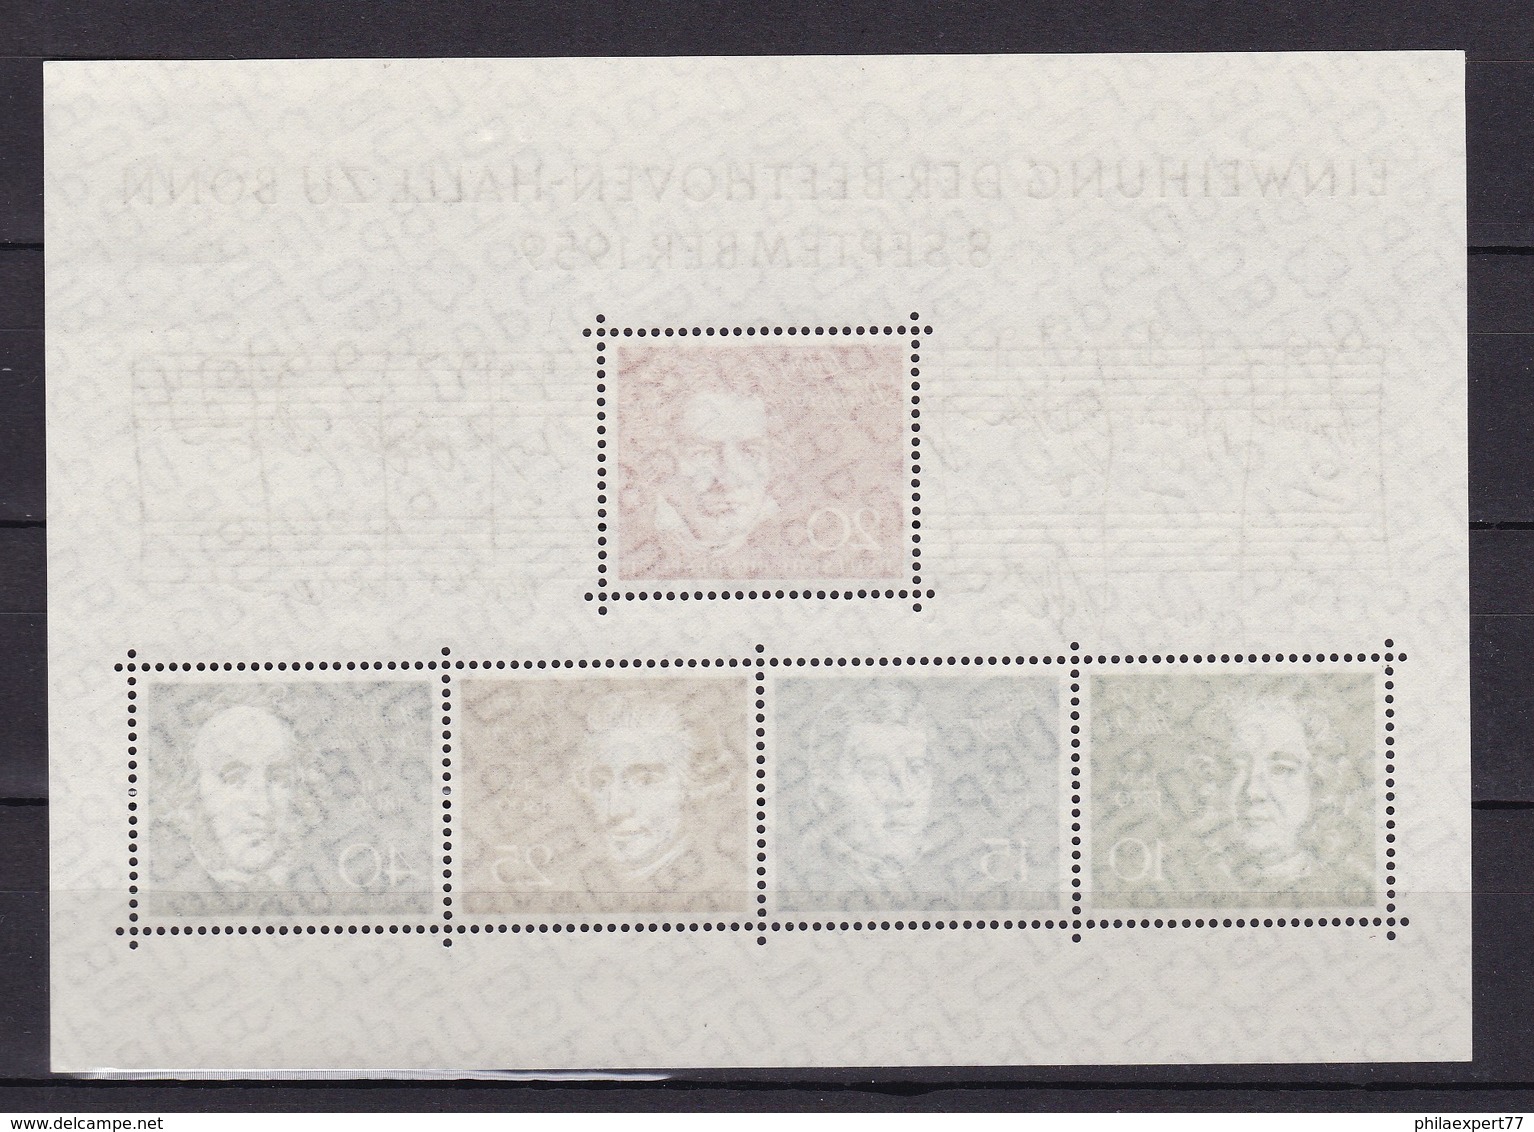 BRD - 1959 - Michel Nr. Block 2 - Postfrisch - 25 Euro - Ungebraucht